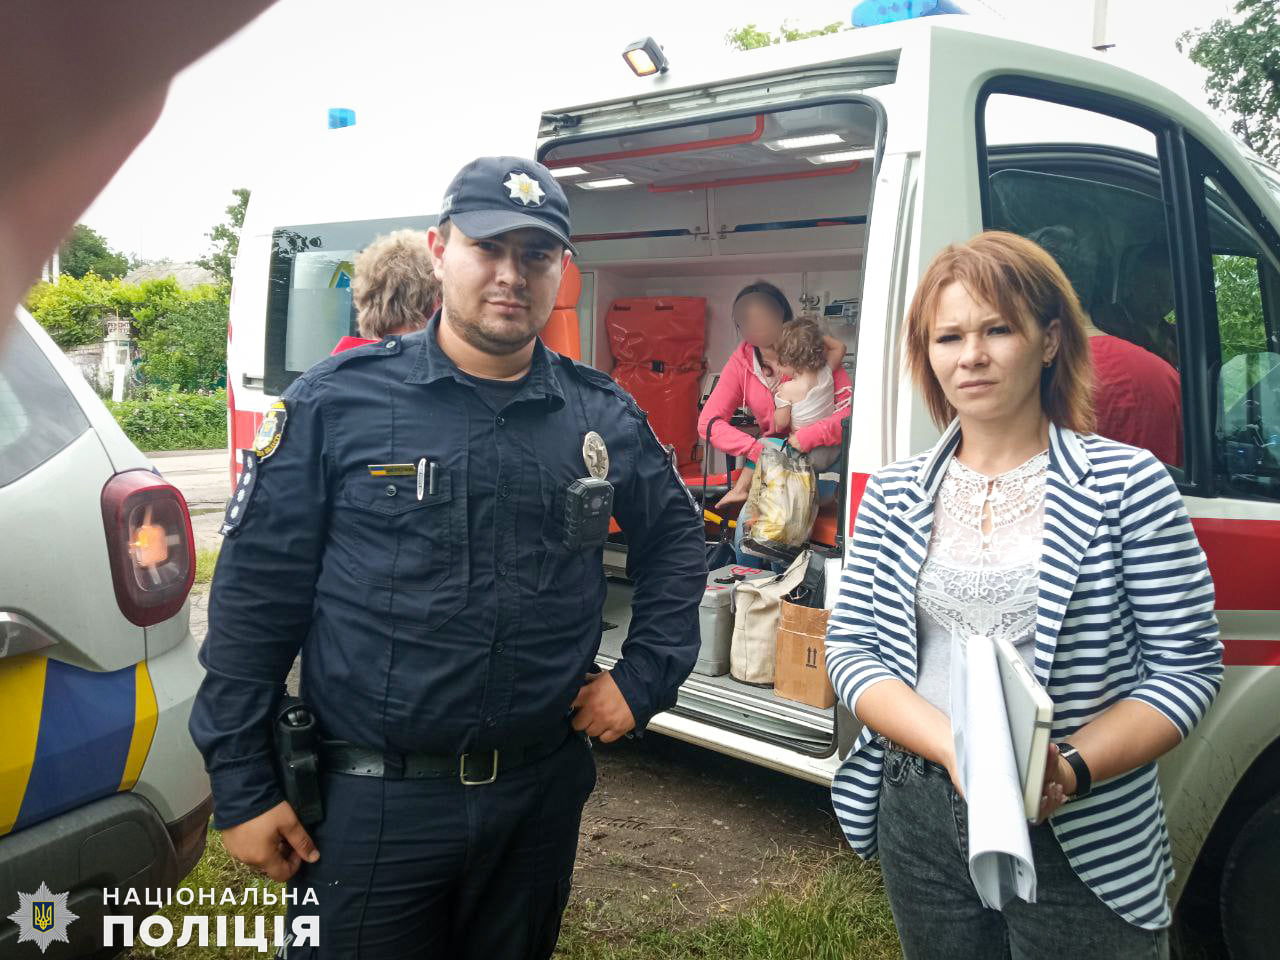 Під Миколаєвом 2-річна дівчинка вилила на себе окріп: мати вирішила не лікувати дитину